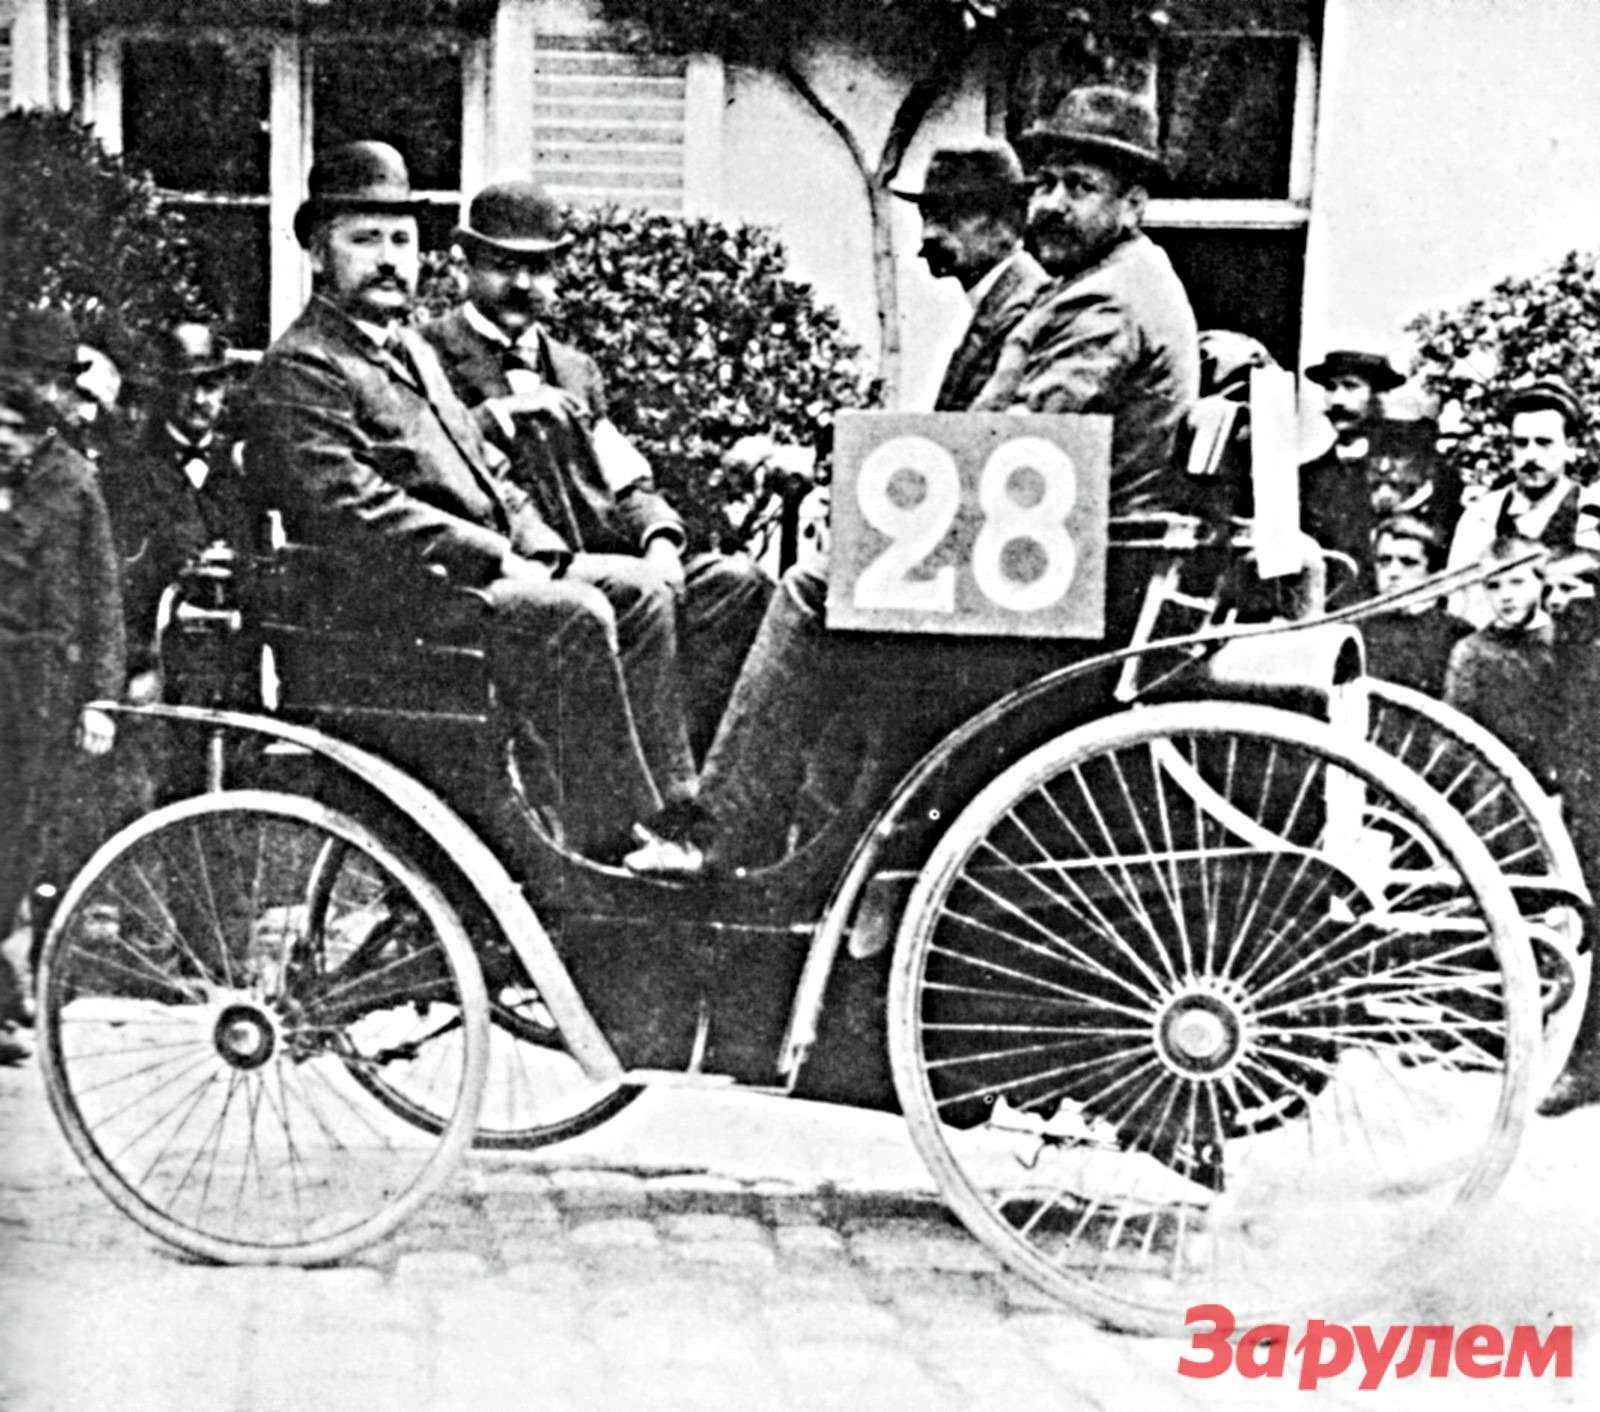 Участвовавший в пробеге Париж – Руан 1894 года 3-сильный Peugeot. Пьер Жиффар, организатор гонки, сидит рядом с Огюстом Дюро, управлявшим экипажем